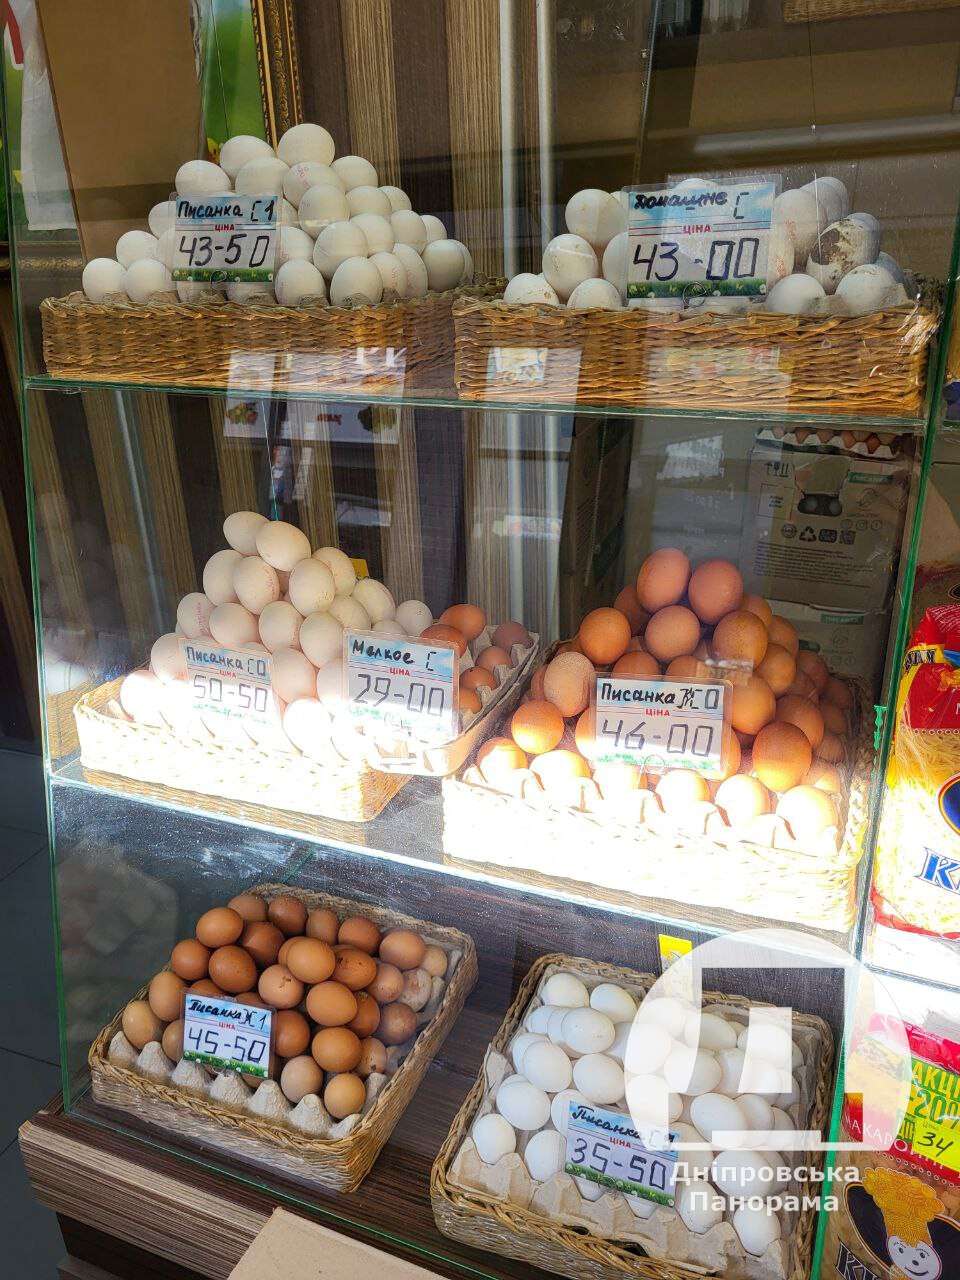  ціни на яйця